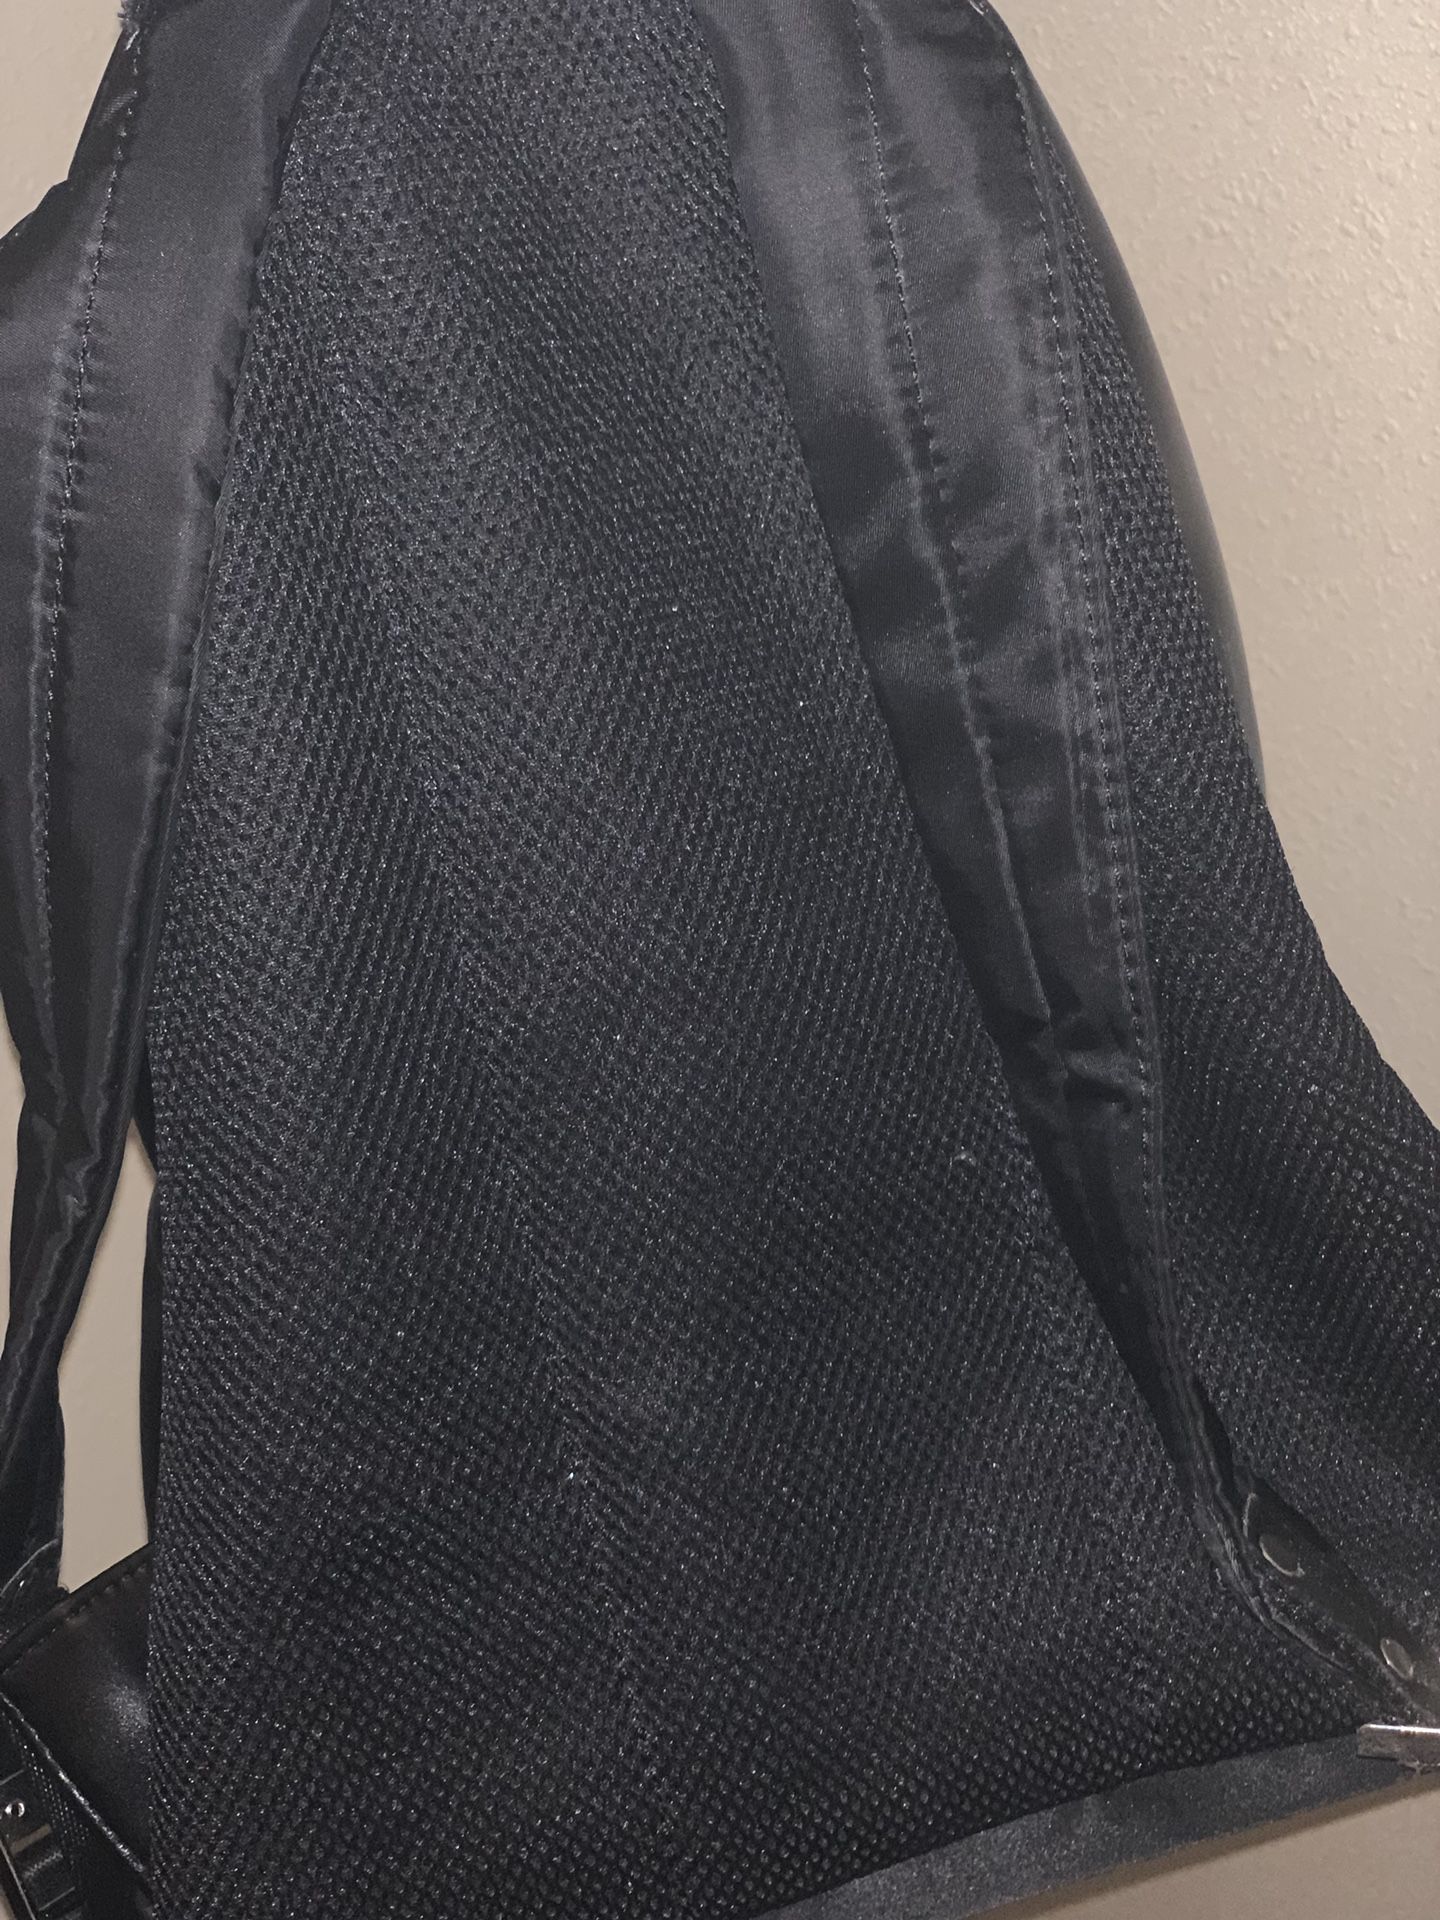 Fendi backpack 🎒 like new